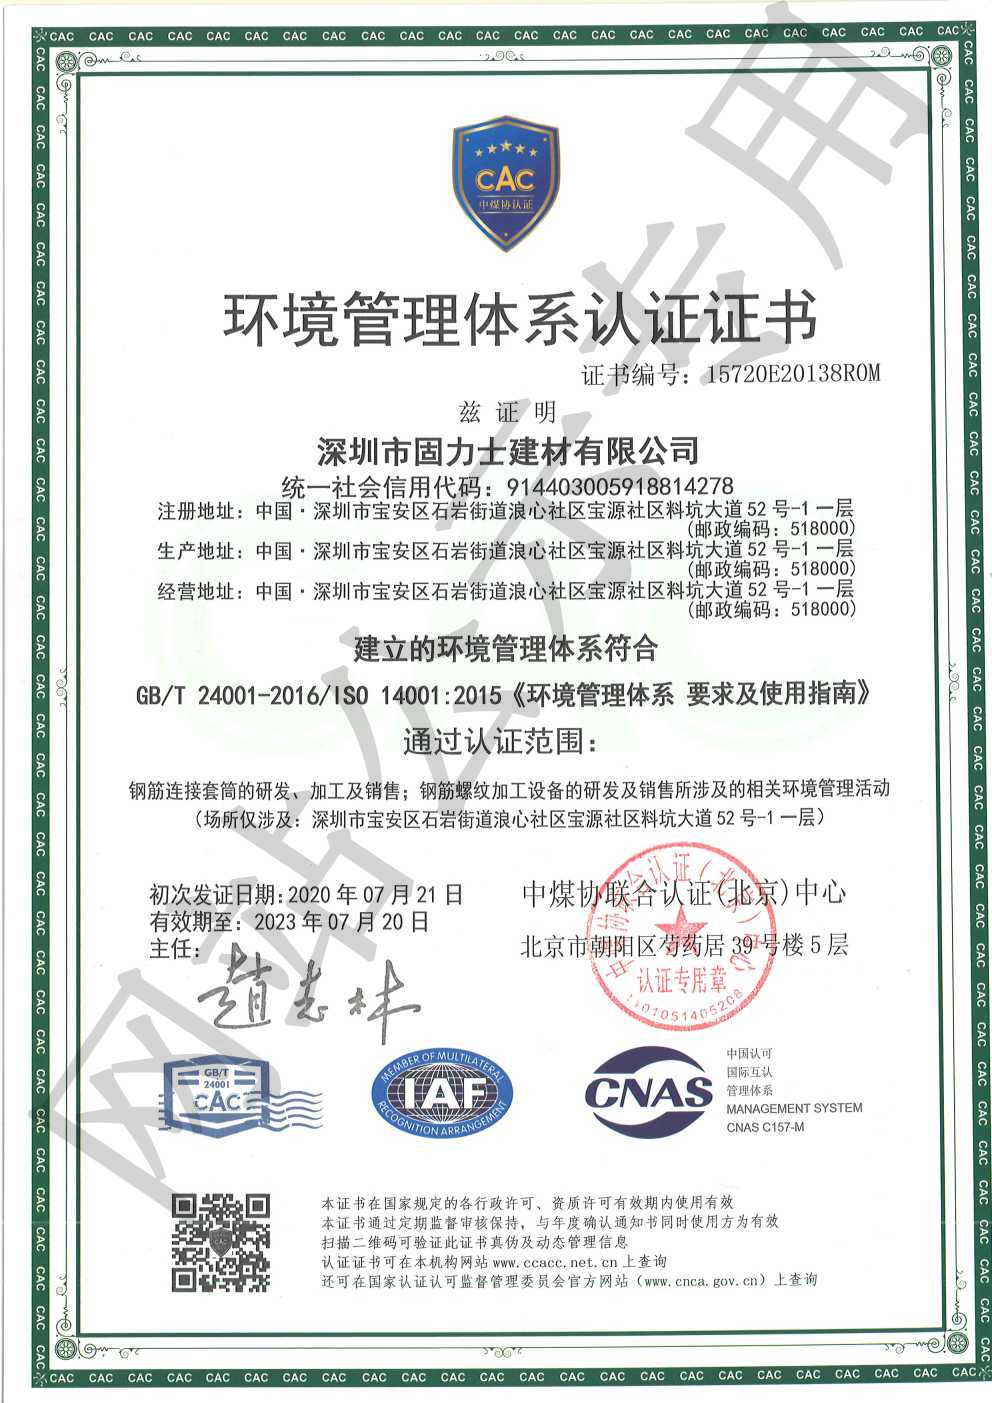 革吉ISO14001证书